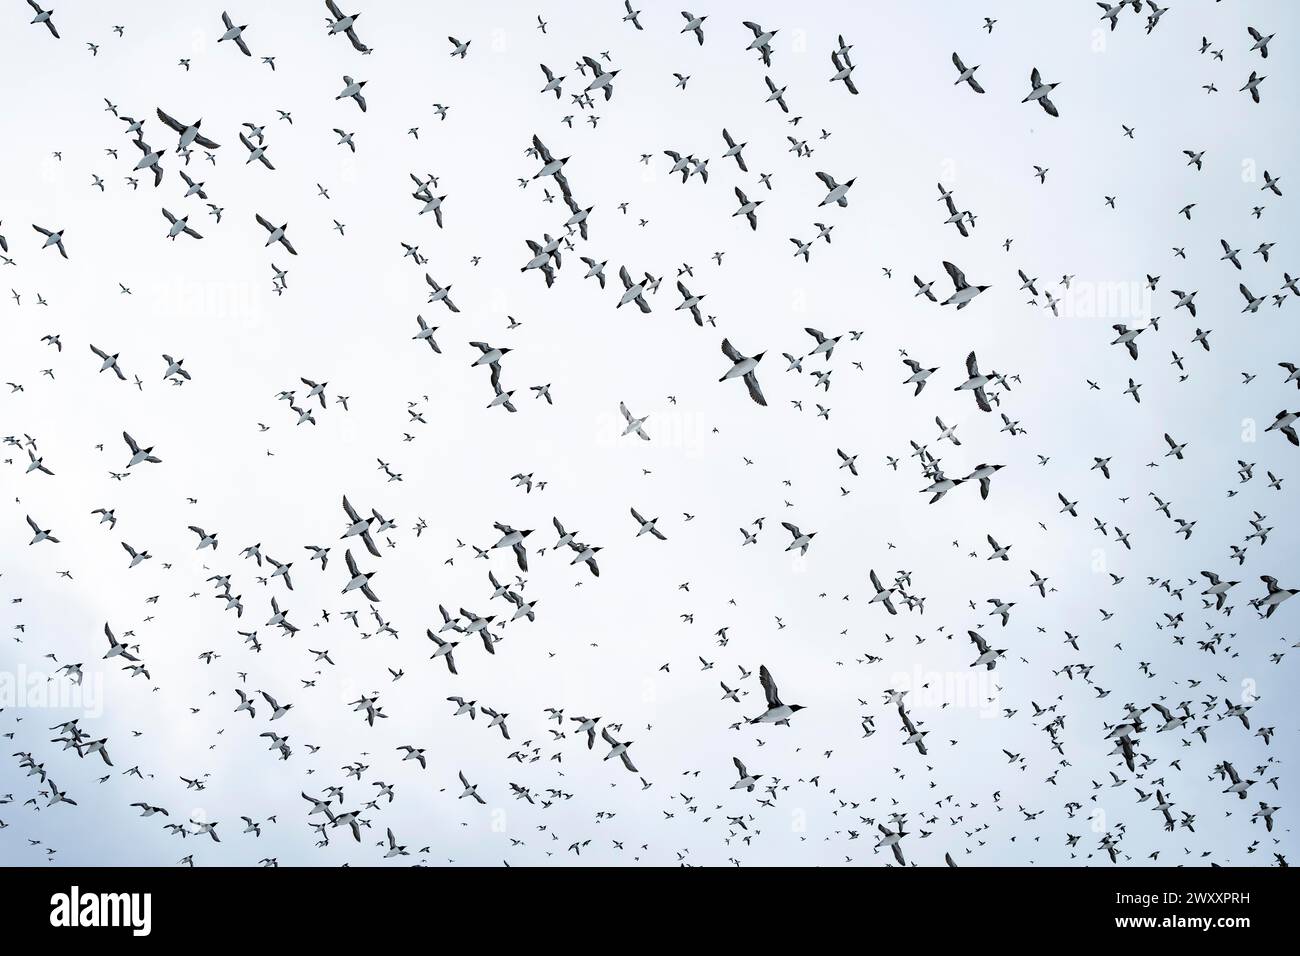 Flock of birds, common guillemots (Uria aalge) in flight, Hornoya Island, Hornoya, Vardo, Varanger Peninsula, Troms og Finnmark, Norway Stock Photo